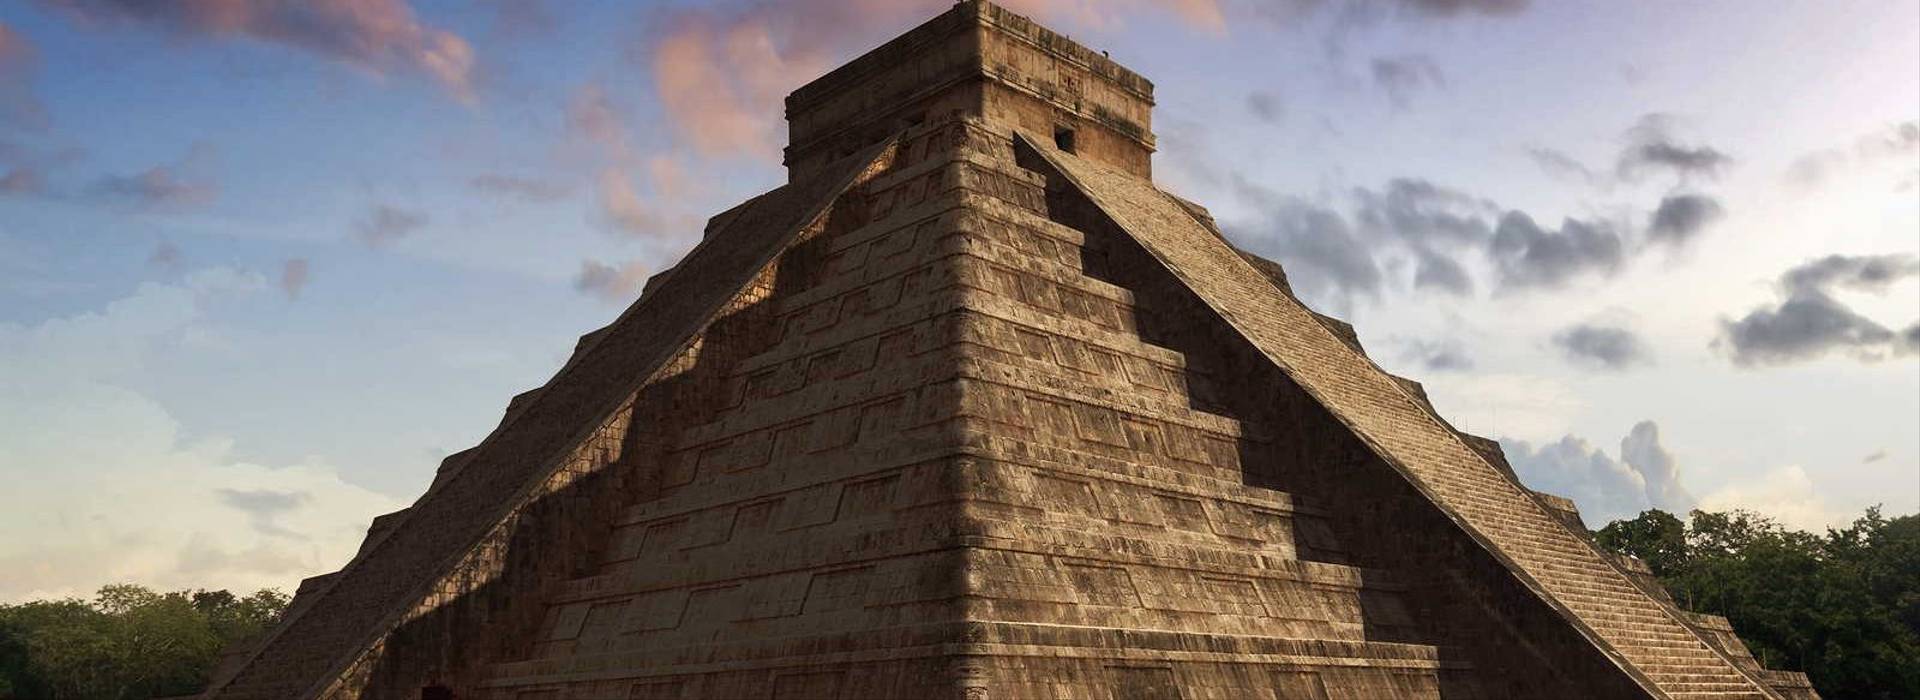 Kukulkan Pyramid, Chichen Itza